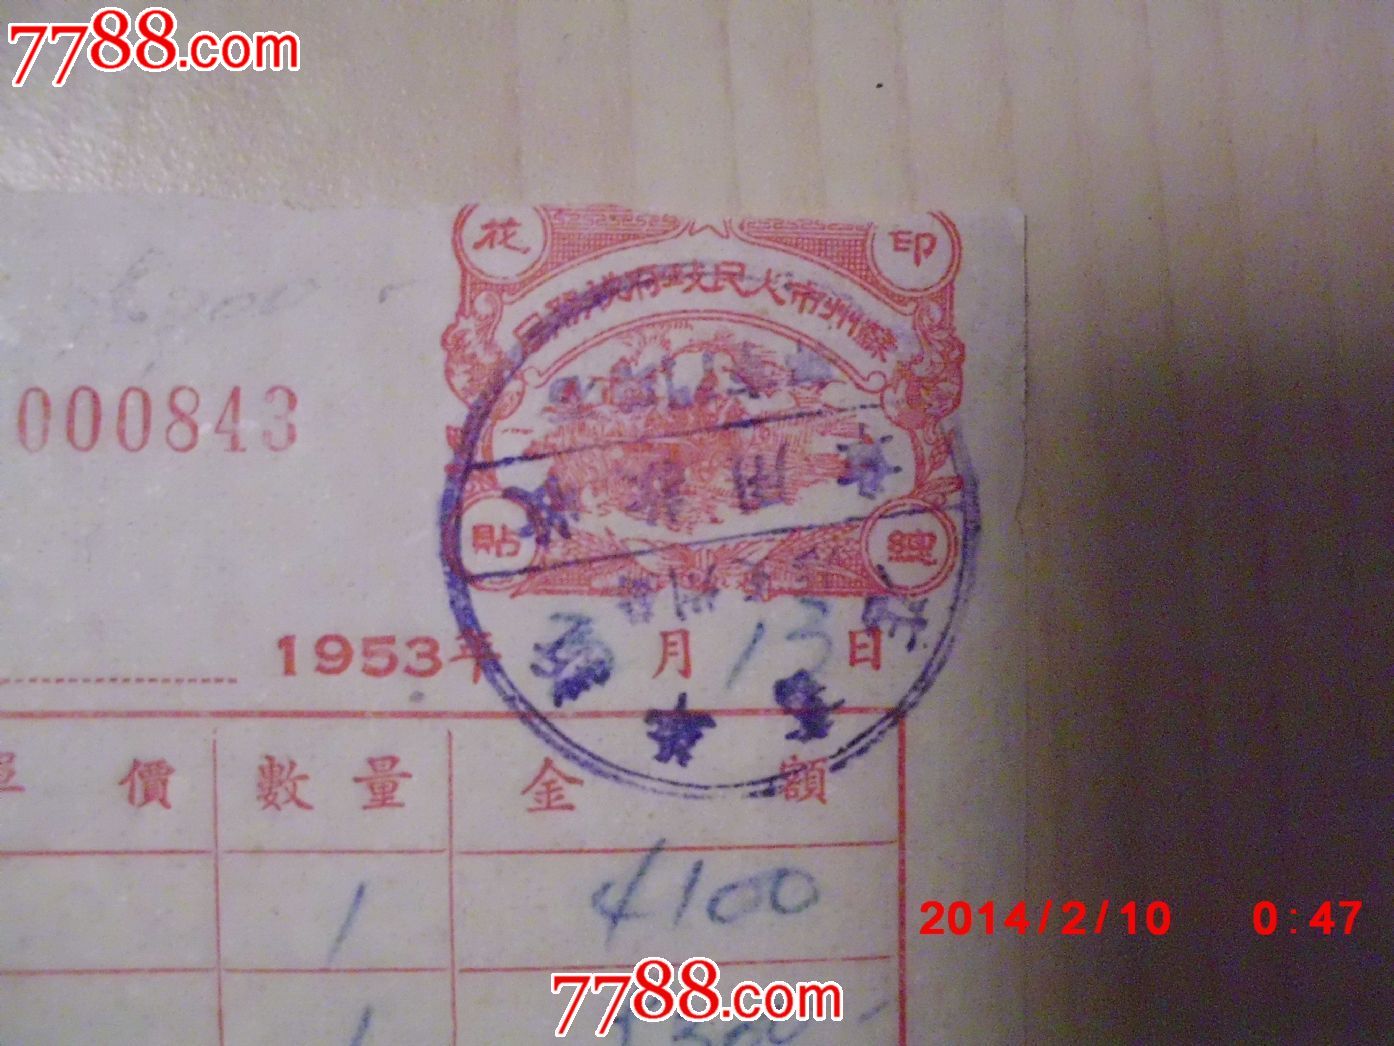 1953年新华书店苏州支店门市发票,印有苏州市